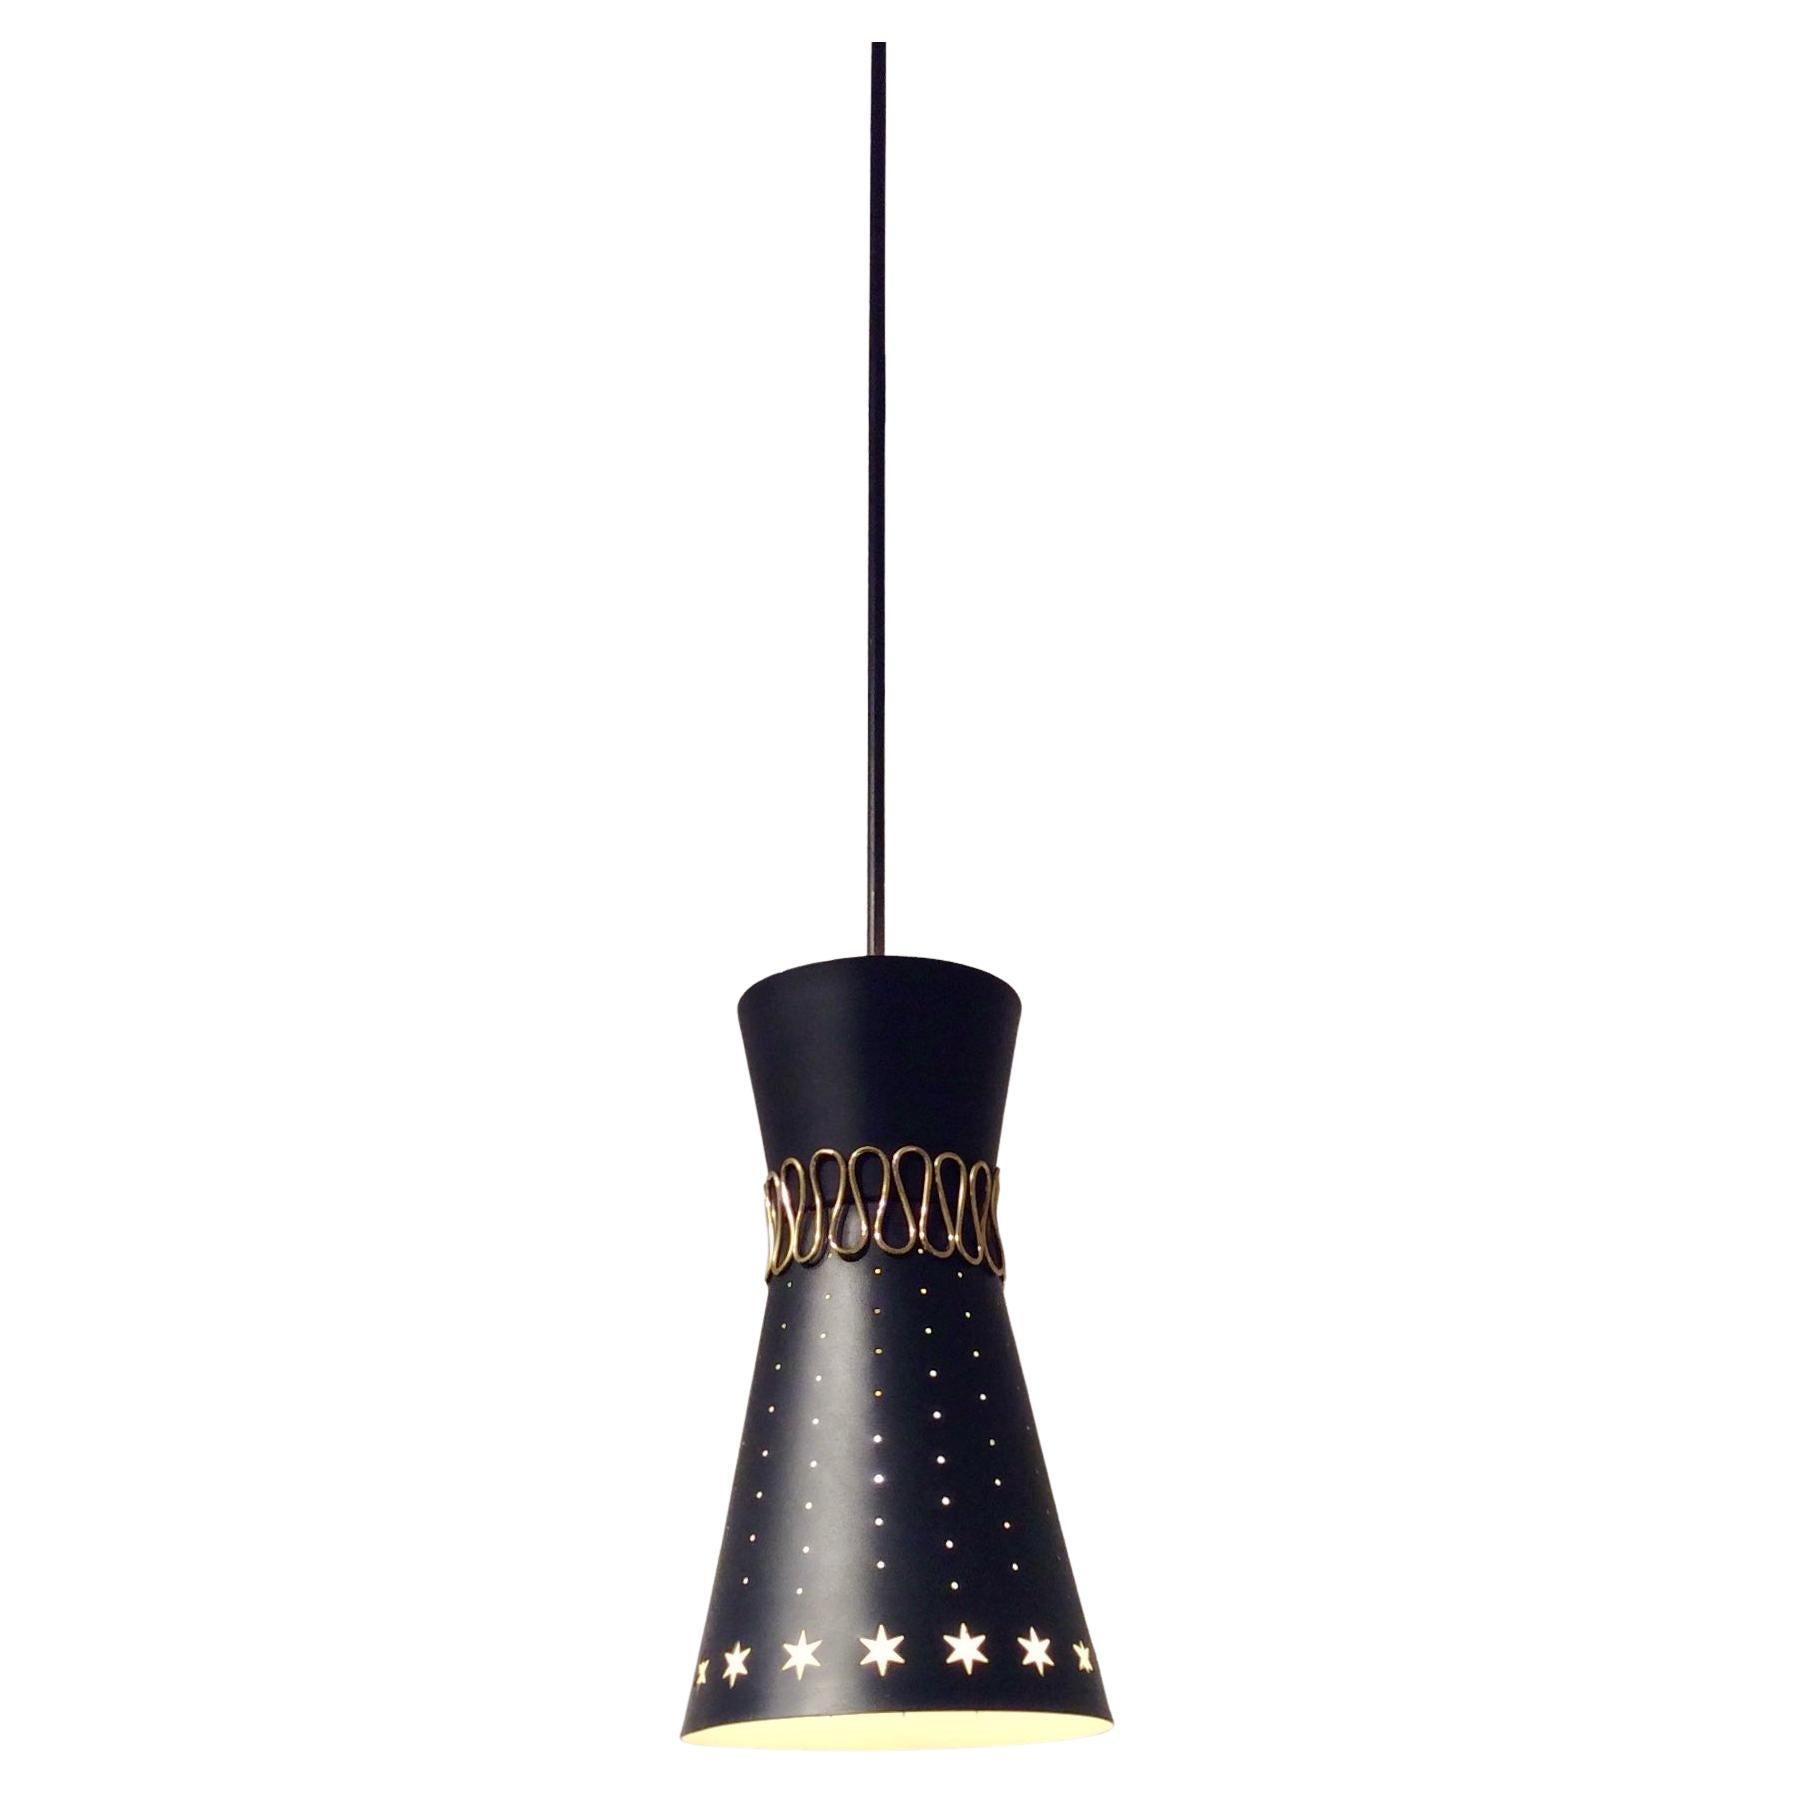 Belle lampe suspendue, circa 1950, Italie.
Diabolo en métal perforé peint en noir à l'extérieur, ivoire à l'intérieur, détails décoratifs en laiton.
Double éclairage avec deux ampoules E27, une vers le plafond, une vers le sol.
Dimensions : hauteur